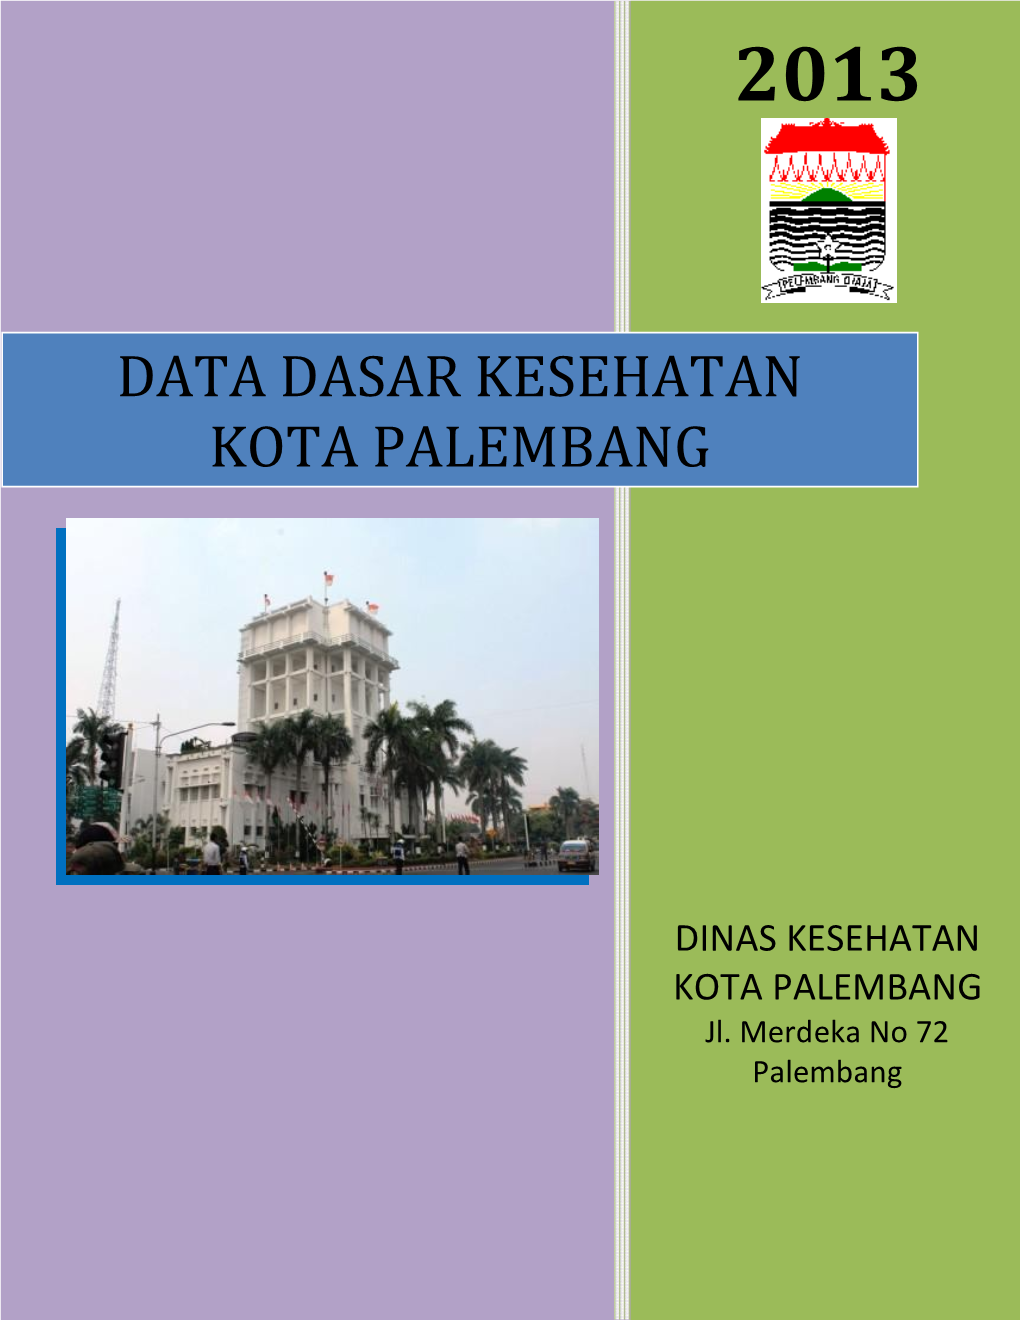 Data Dasar Kesehatan Kota Palembang